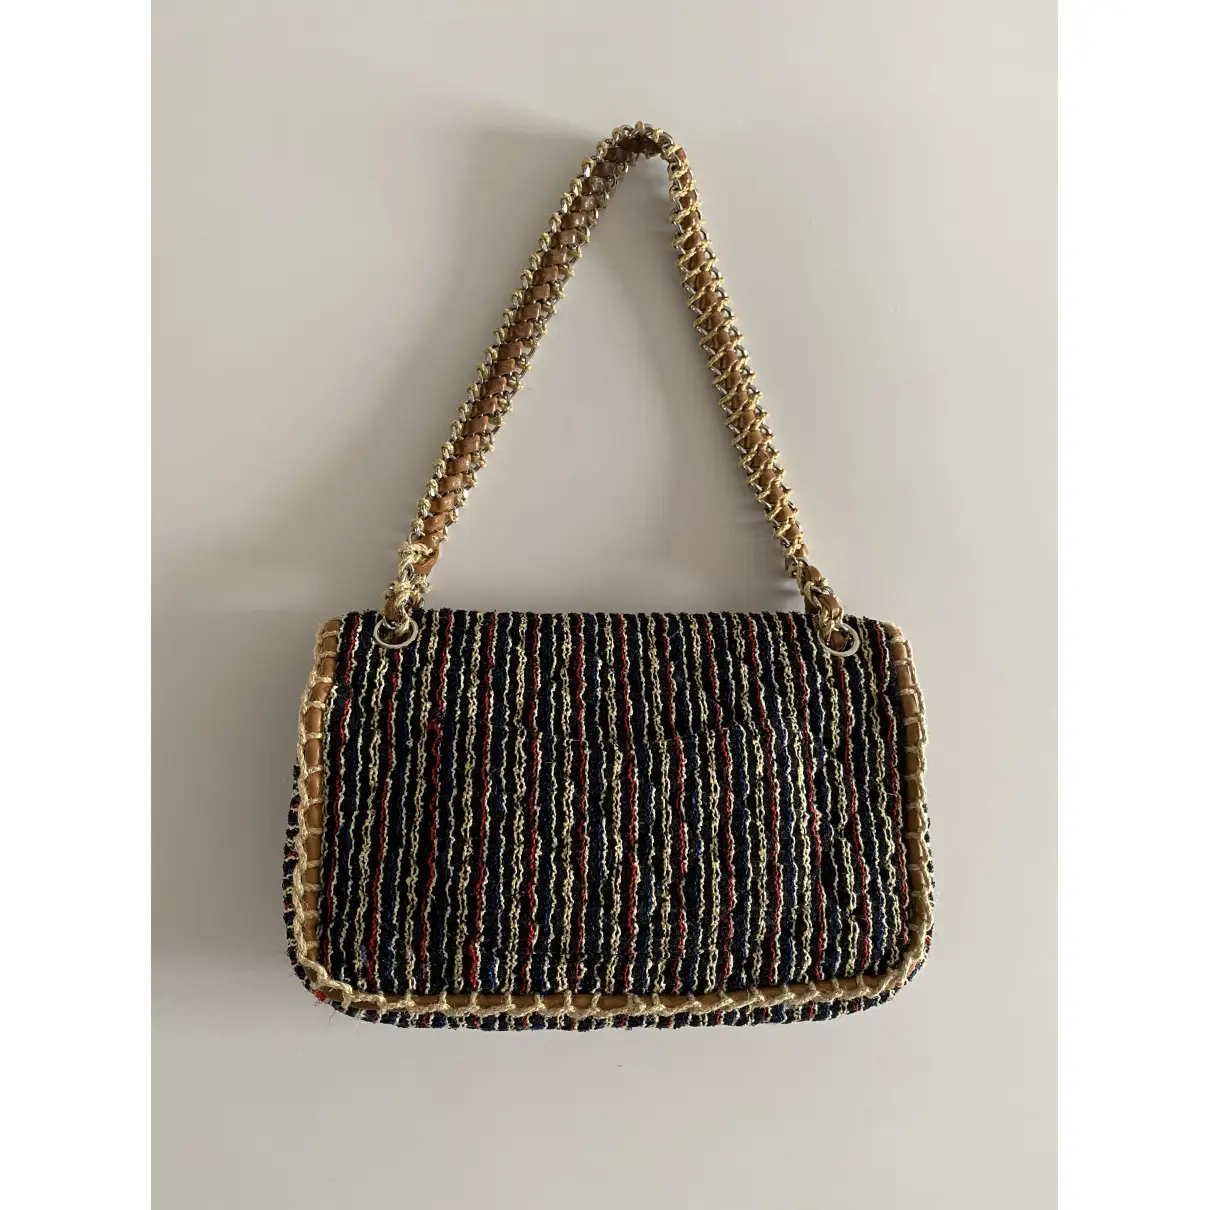 Buy Chanel Timeless/Classique tweed handbag online